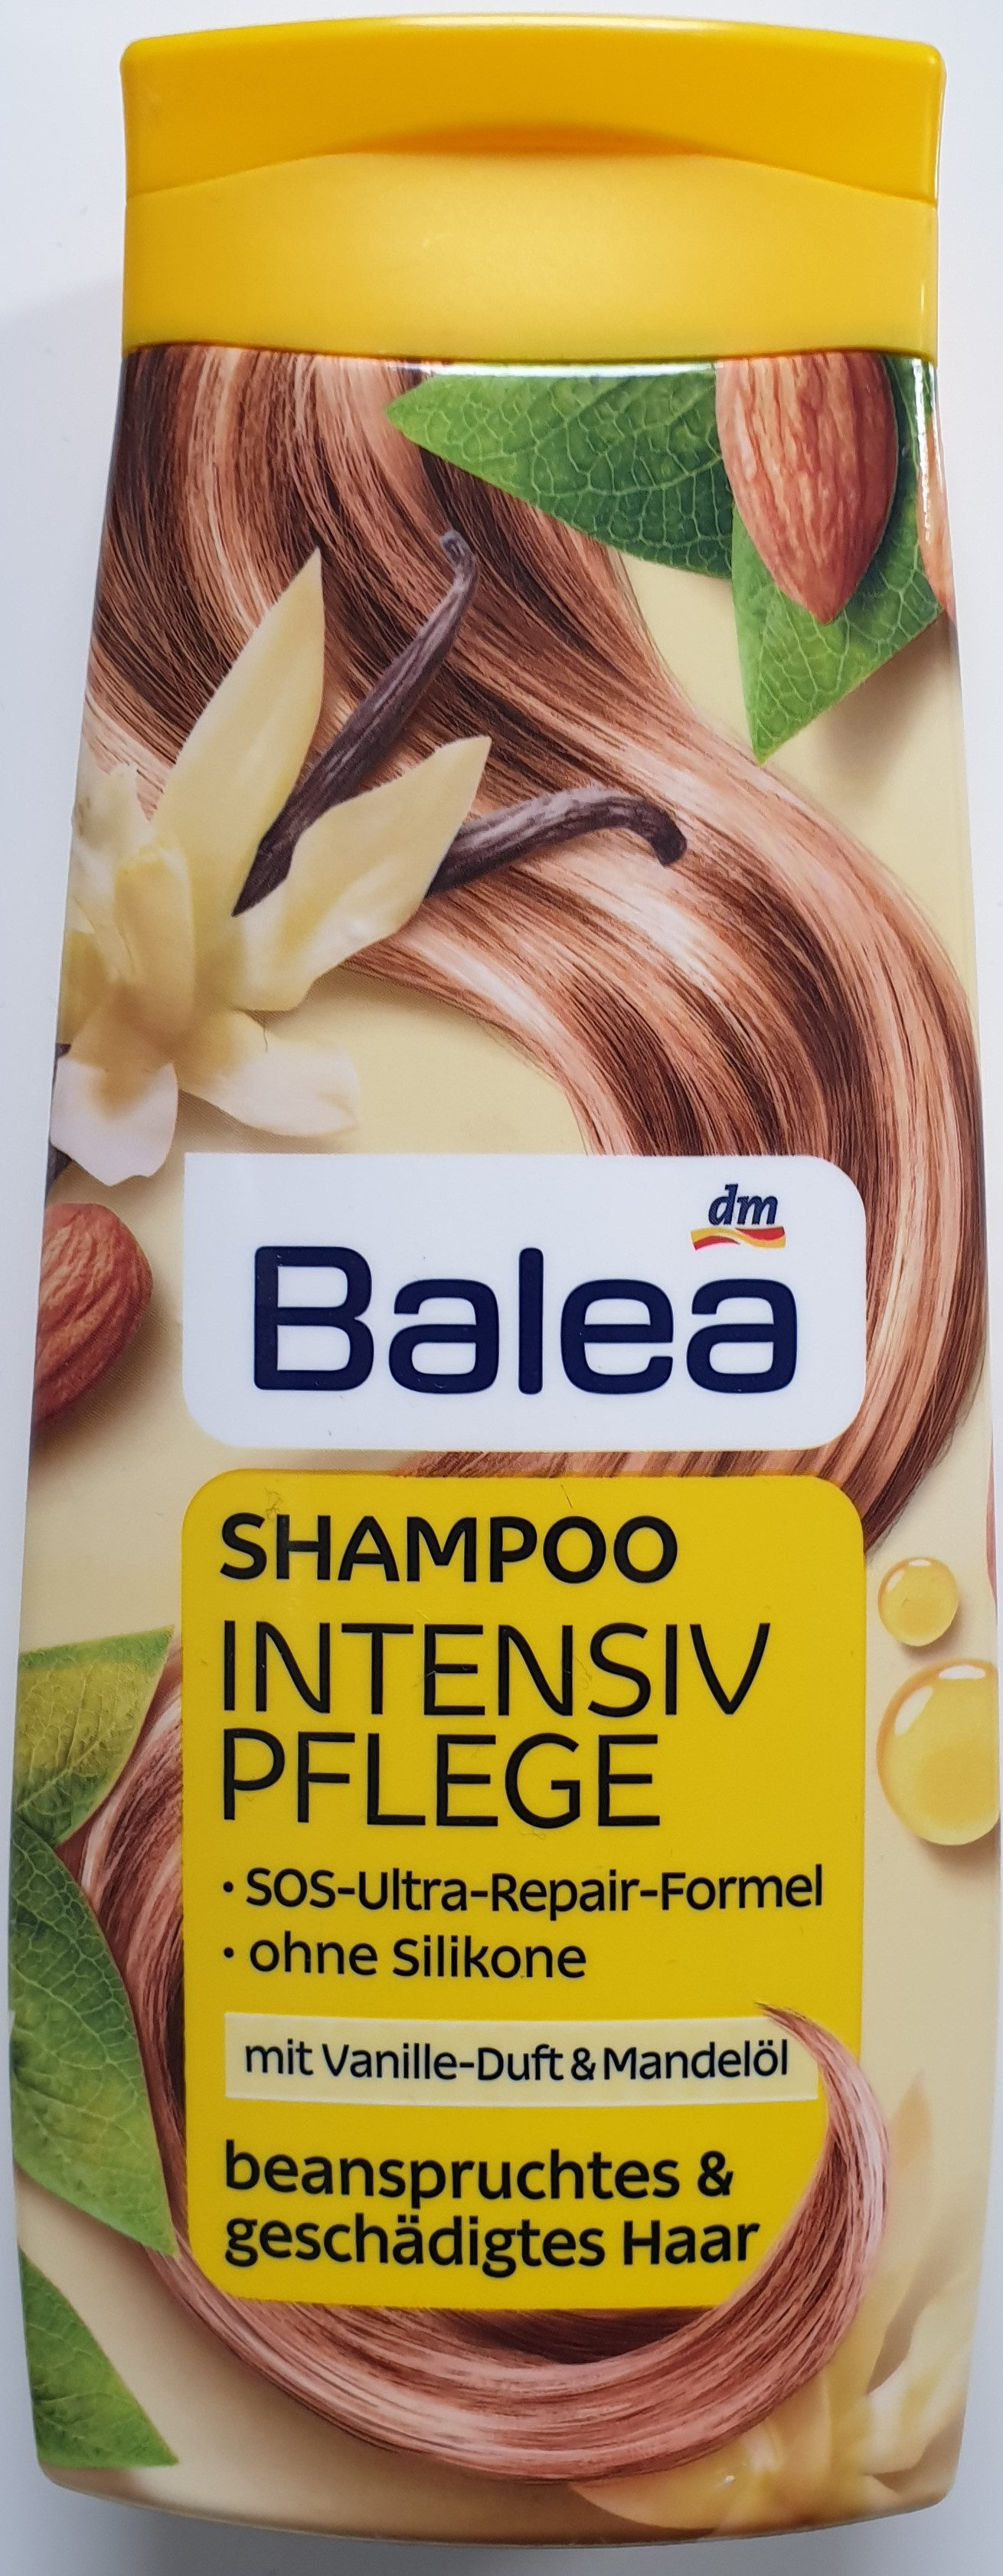 Shampoo Intensiv Pflege mit Vanille-Duft und Mandelöl - Produit - de